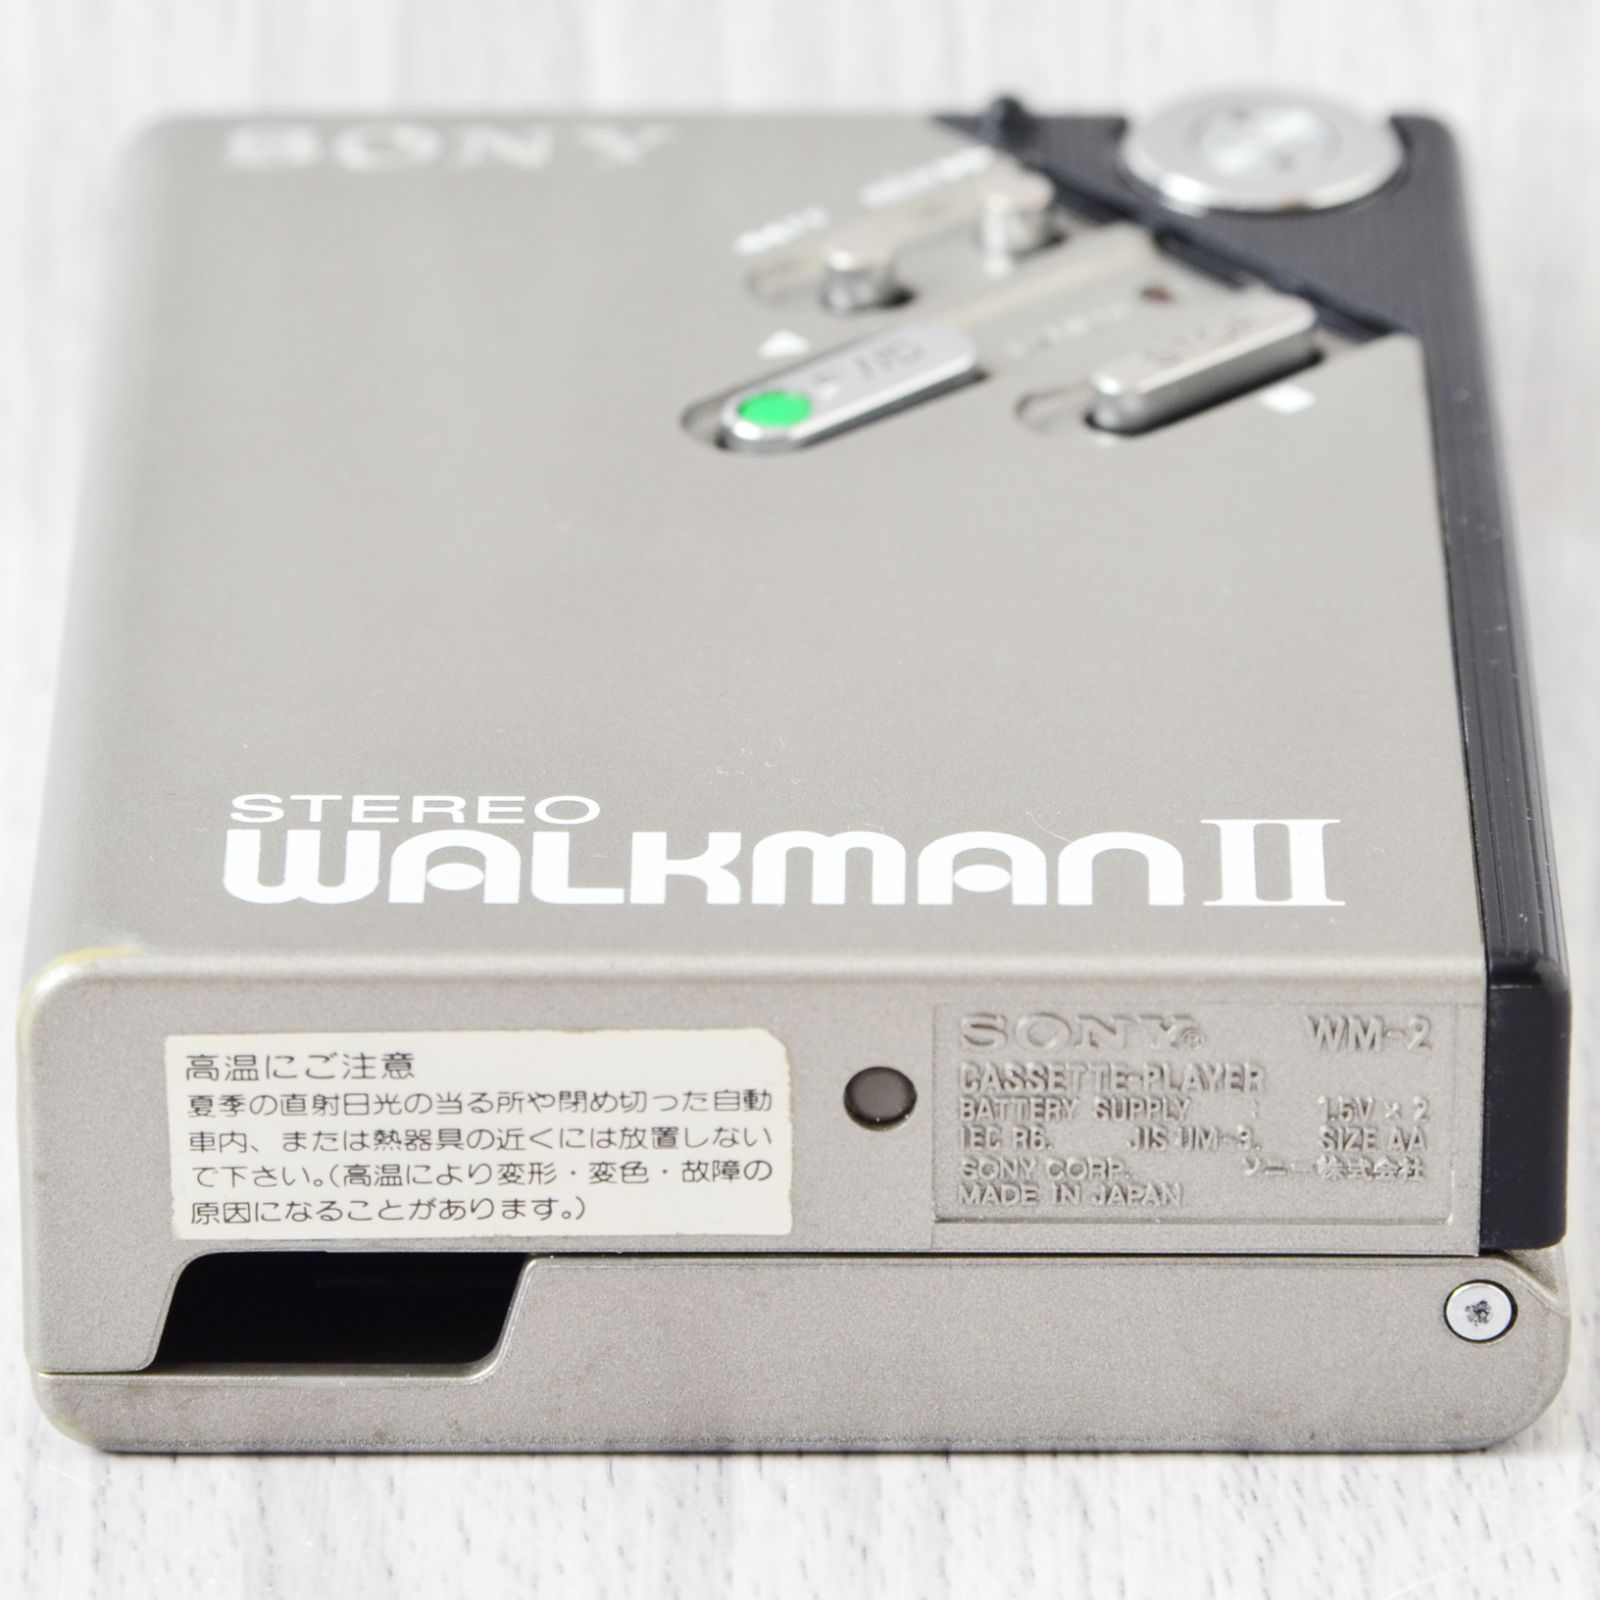 【絶賛商品】美品! SONY WALKMAN WM-2 カセットウォークマン 黒 ケース付 ポータブルプレーヤー